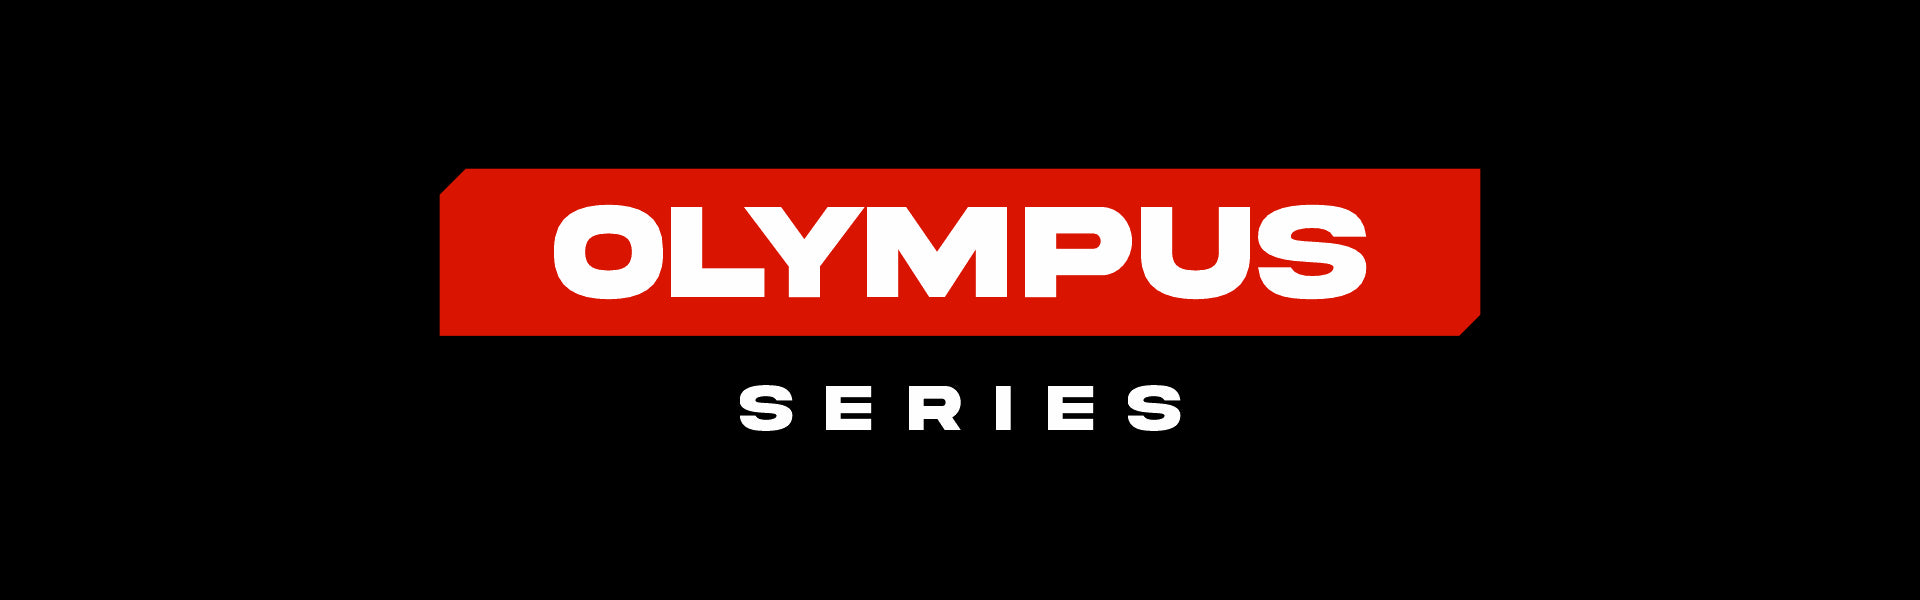 Olympus Series